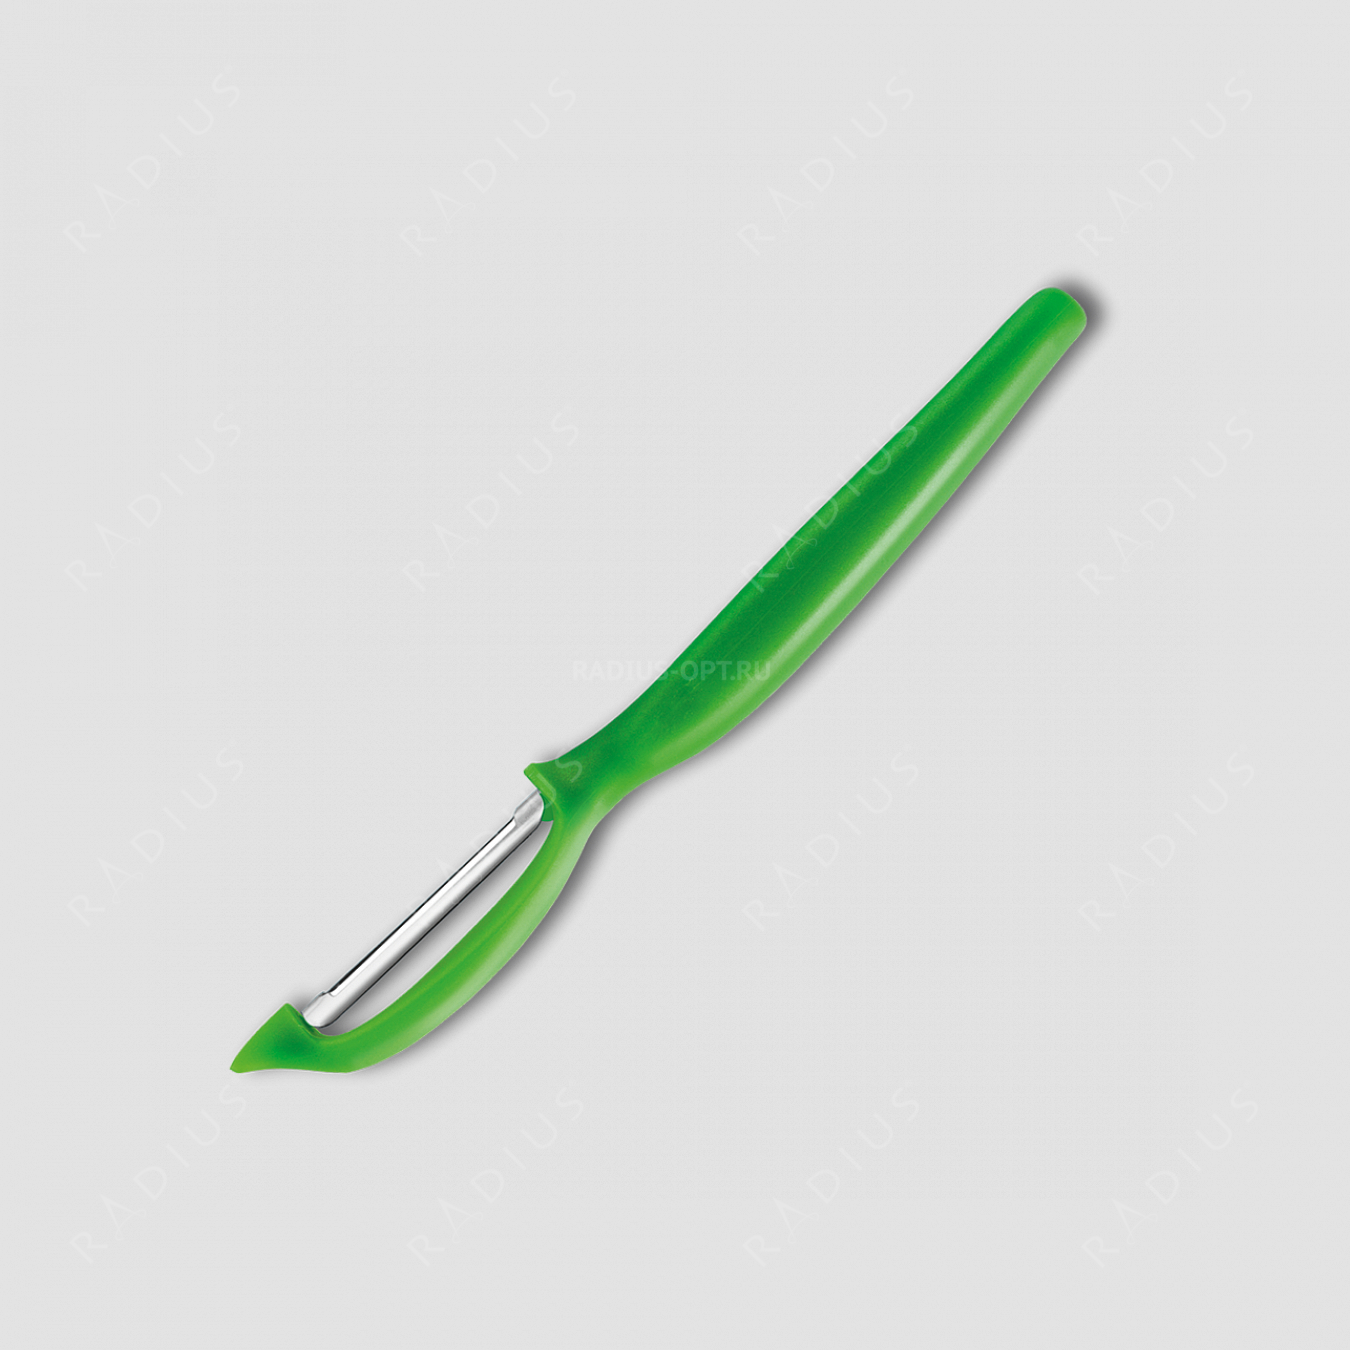 Нож кухонный для чистки овощей и фруктов, с плавающим лезвием, рукоять зеленая, серия Sharp Fresh Colourful, WUESTHOF, Золинген, Германия